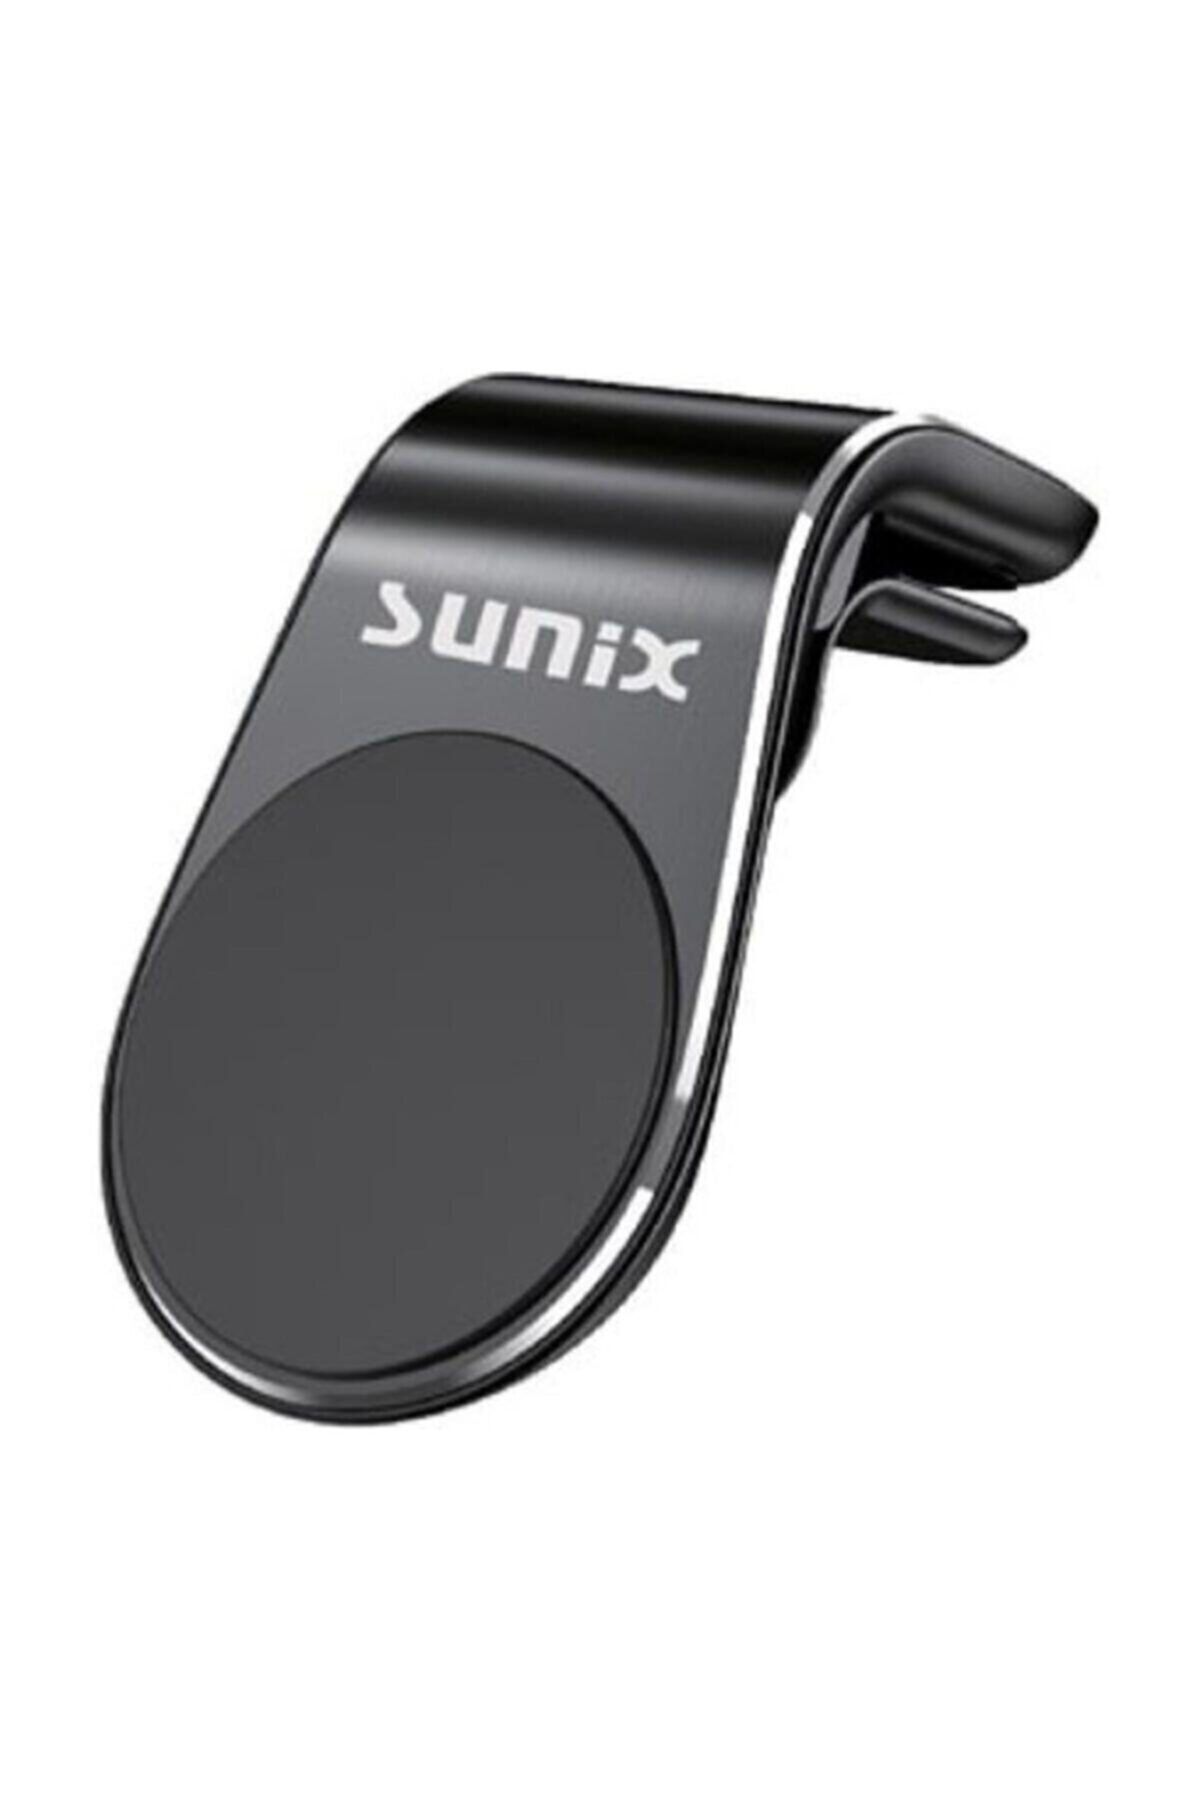 Sunix Hld-11 Araç Tutucu Premium Series Ww Passat Özel Tasarım Fiyatı,  Yorumları - Trendyol